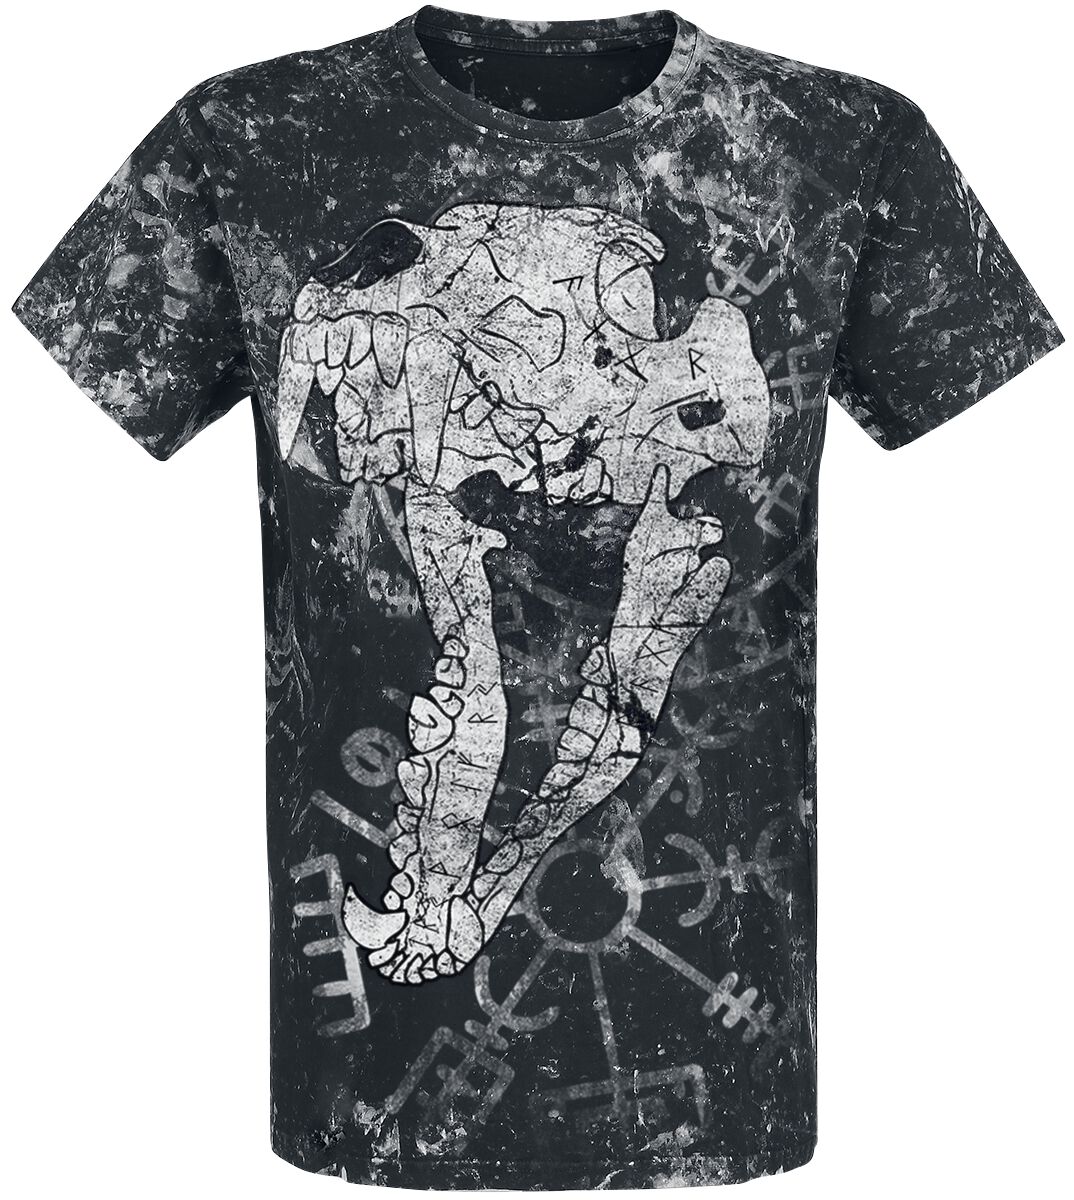 T-Shirt Manches courtes de Outer Vision - Wolf Skull Shirt - M à 3XL - pour Homme - gris foncé/blanc